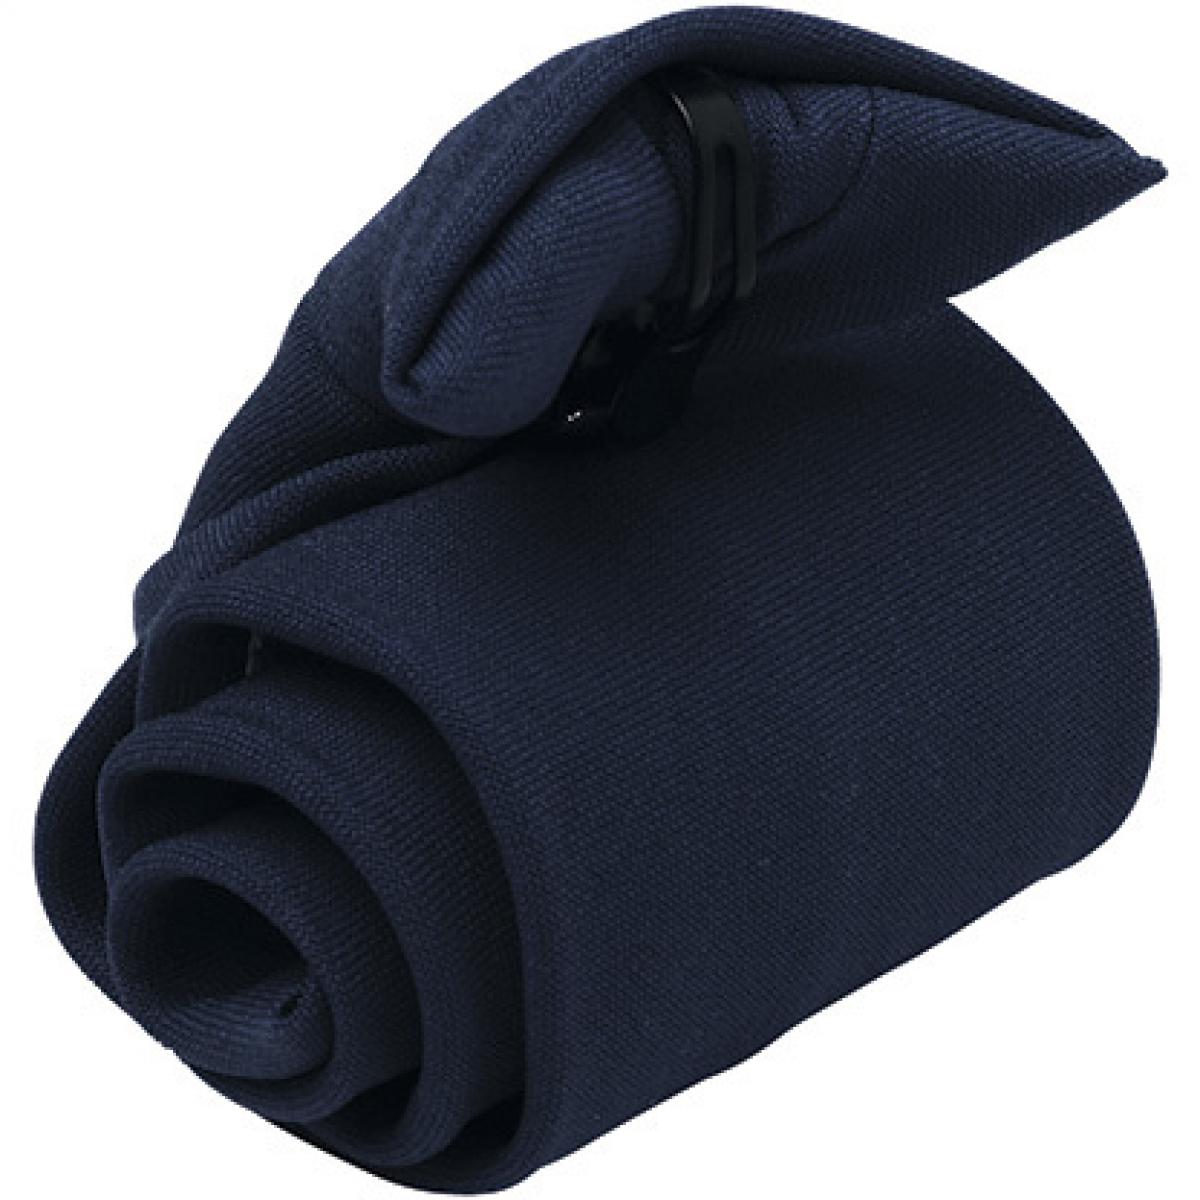 Hersteller: Premier Workwear Herstellernummer: PR710 Artikelbezeichnung: ´Clip-on´ Krawatte Farbe: Navy (ca. Pantone 2766)